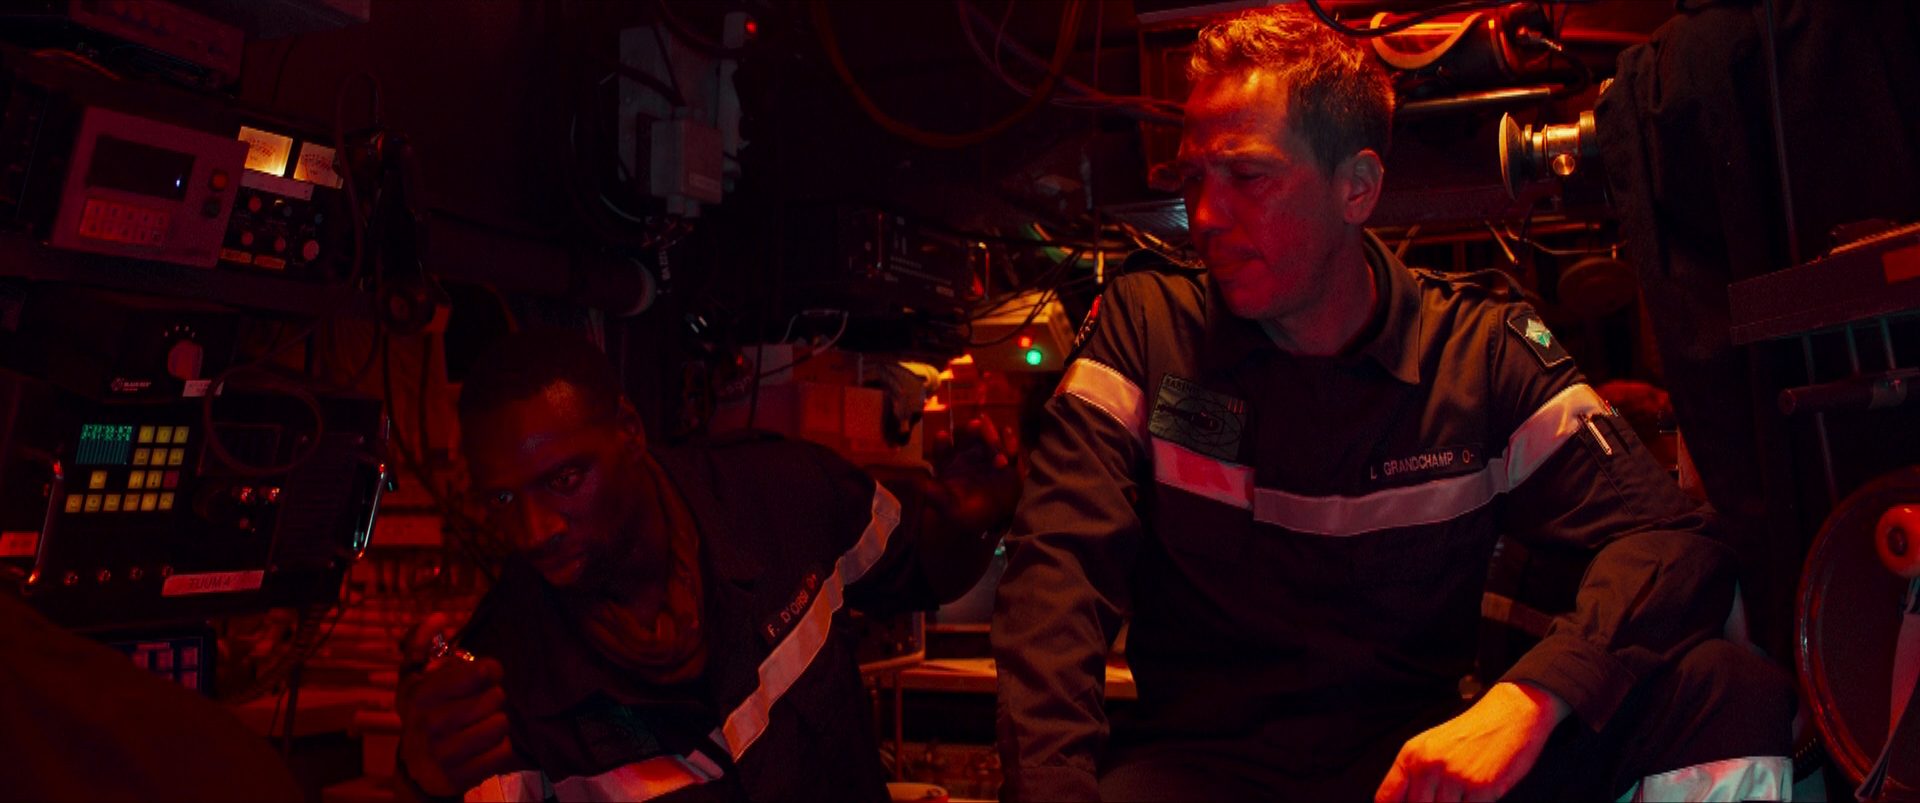 Omar Sy und Reda Kateb als Offiziere an Bord eines französischen U-Bootes in brenzliger Situation, umgeben von zahlreichen Apparaturen.